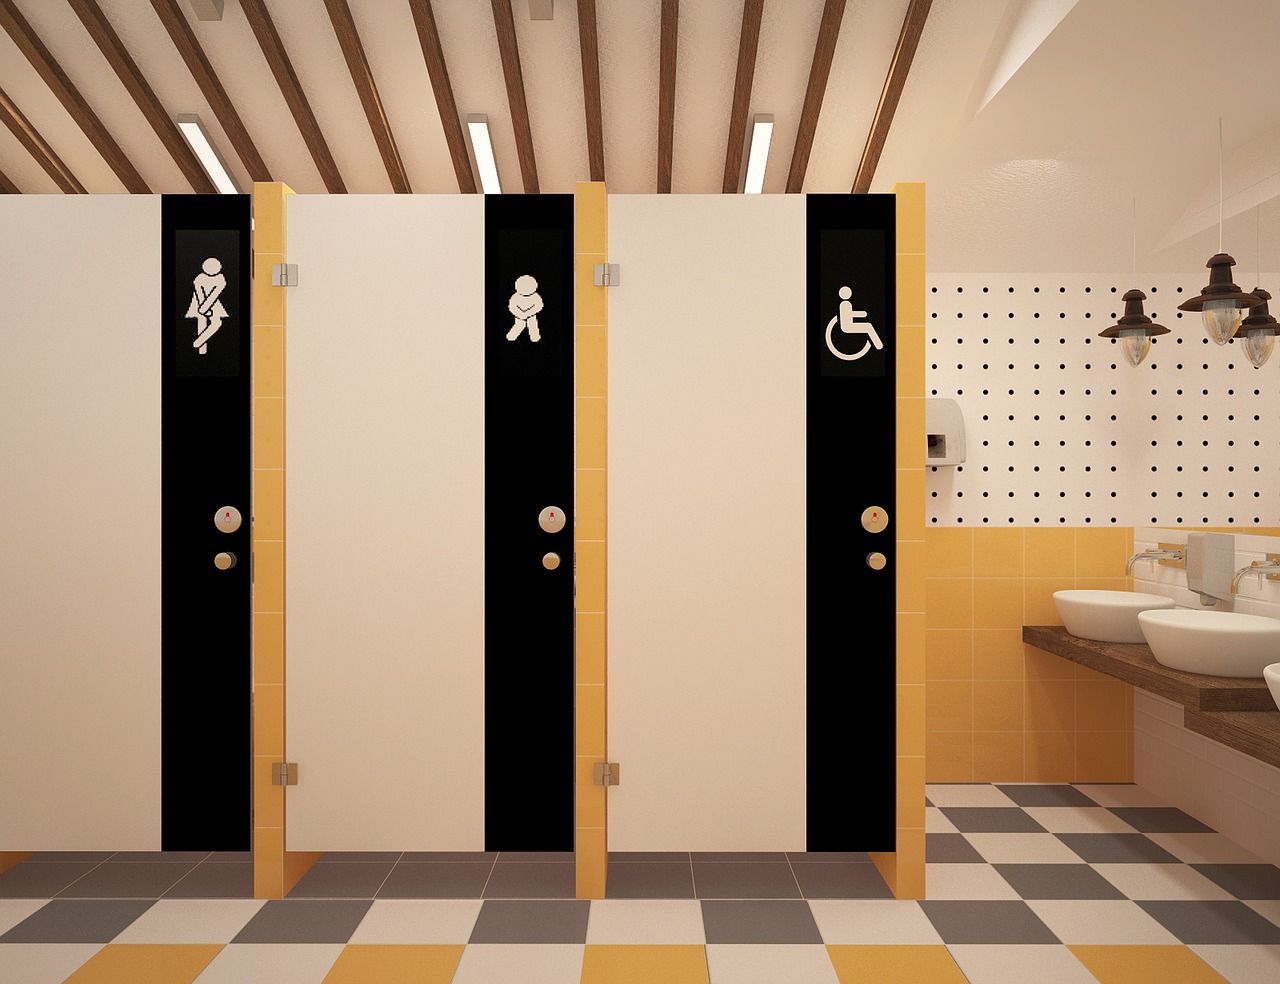 Toaleta publiczna – typowe wyposażenie